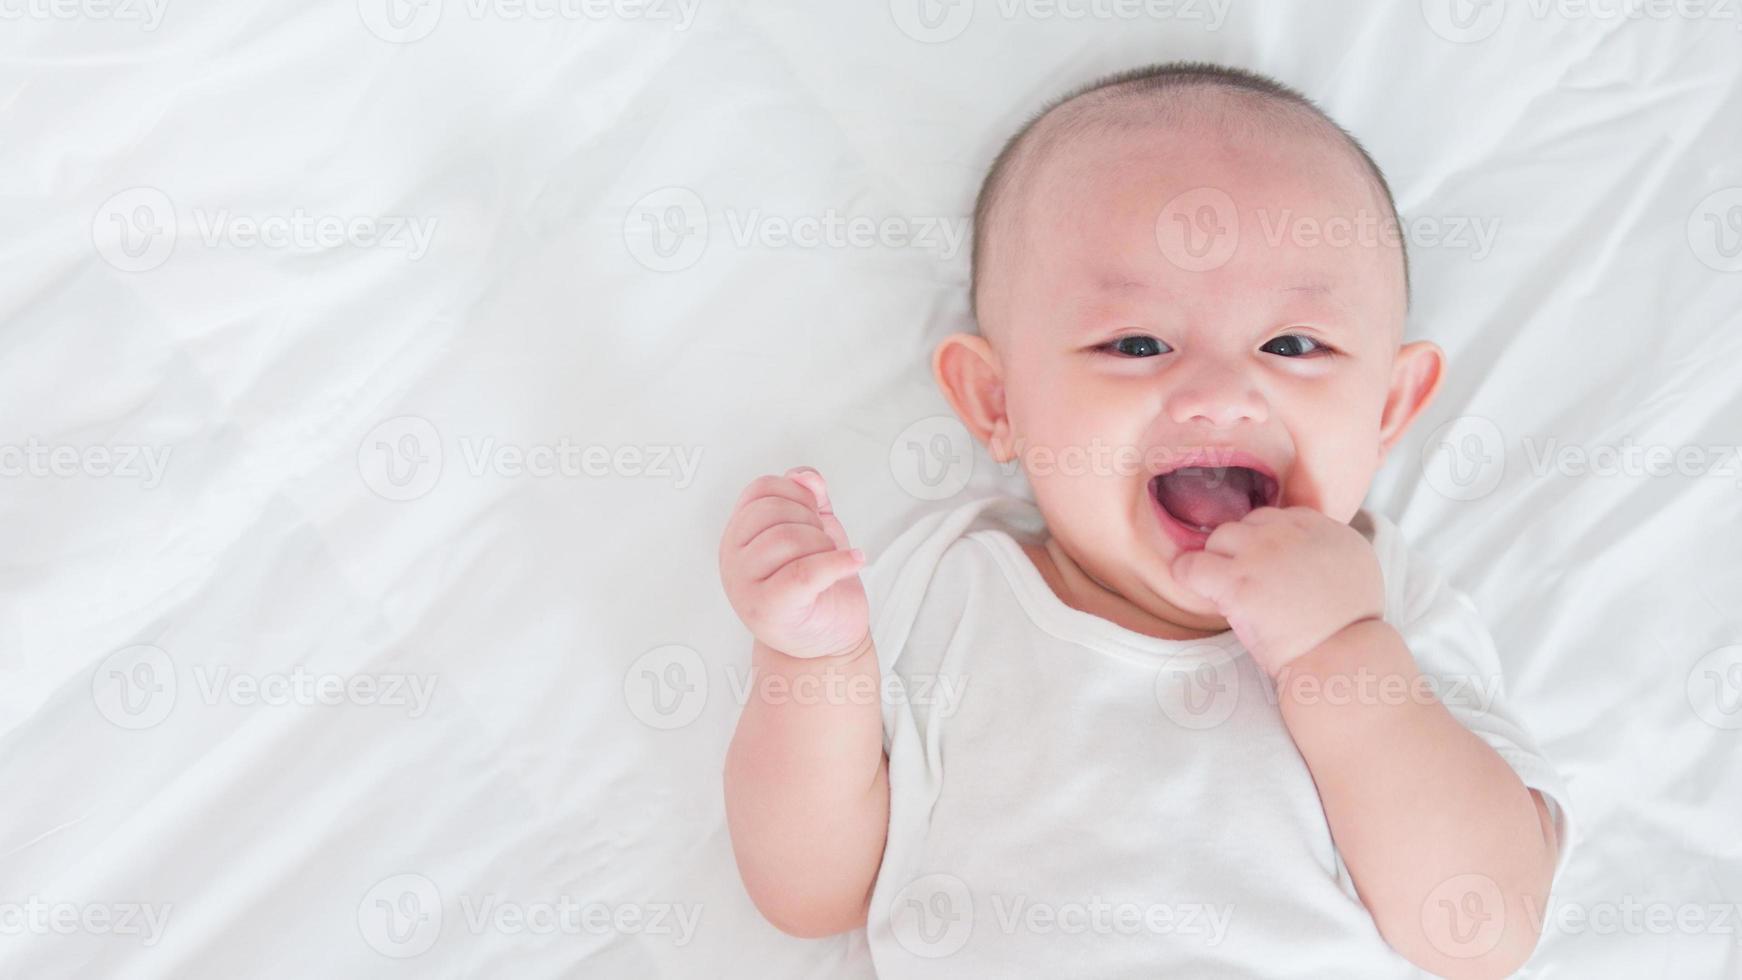 retrato de un lindo bebé recién nacido asiático acostado en una cama blanca mira la cámara con una sonrisa sonriente cara feliz. inocente pequeño recién nacido adorable. concepto de paternidad y día de la madre. foto